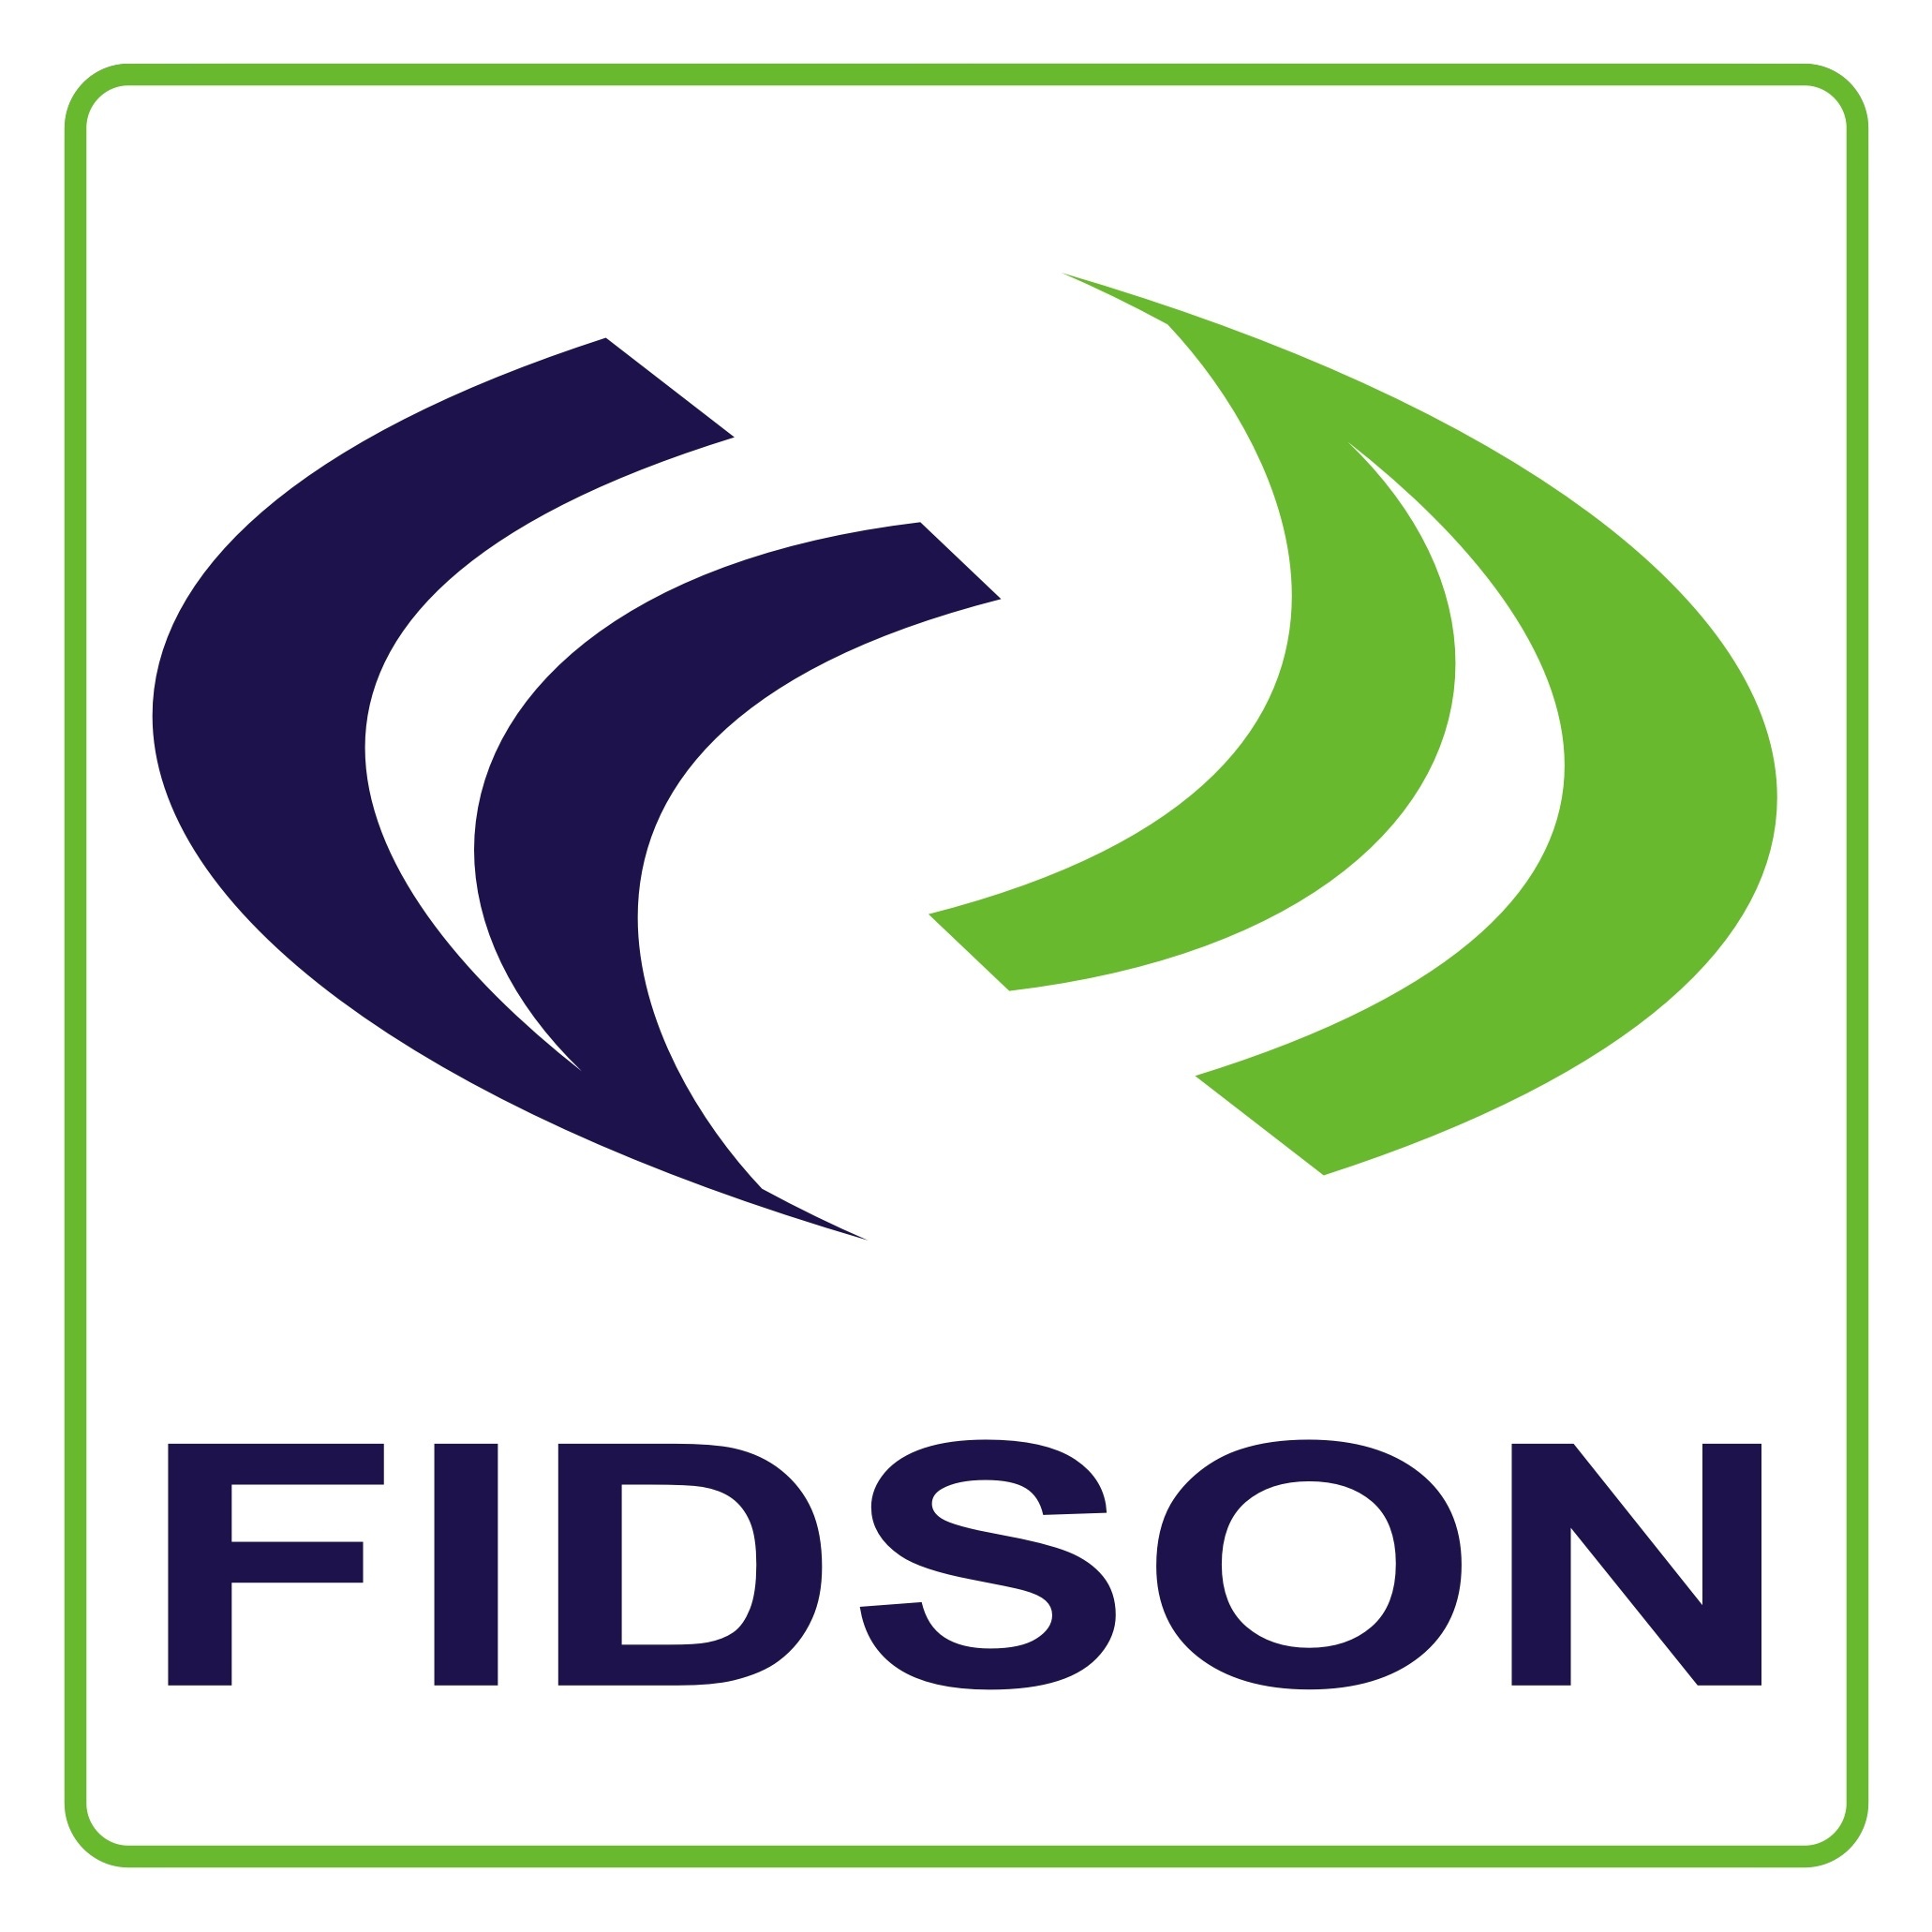 Fidson Healthcare